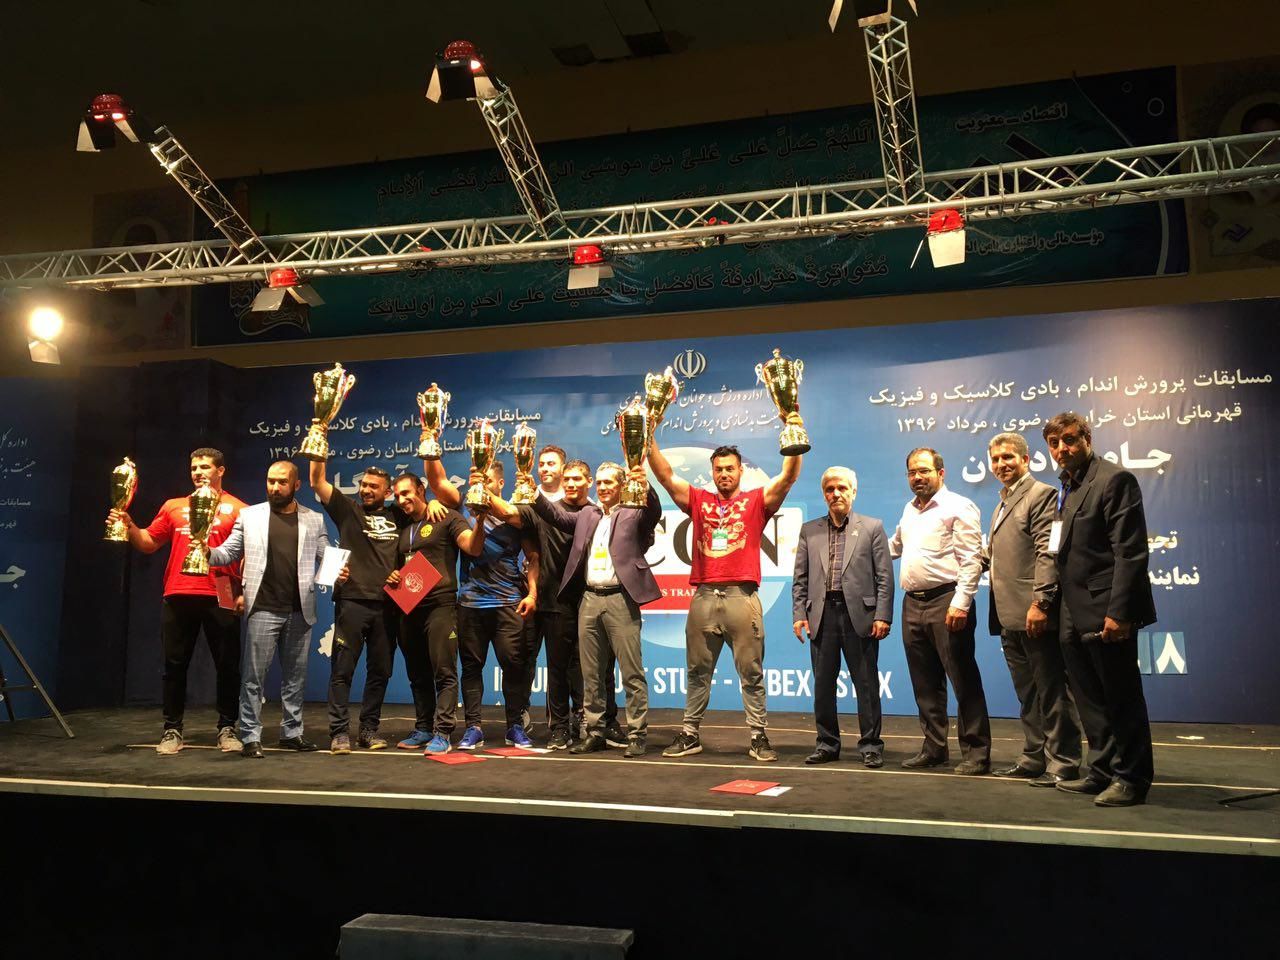 مسابقات جام آزادگان در مشهد برگزار شد/196 ورزشکار به رقابت پرداختند